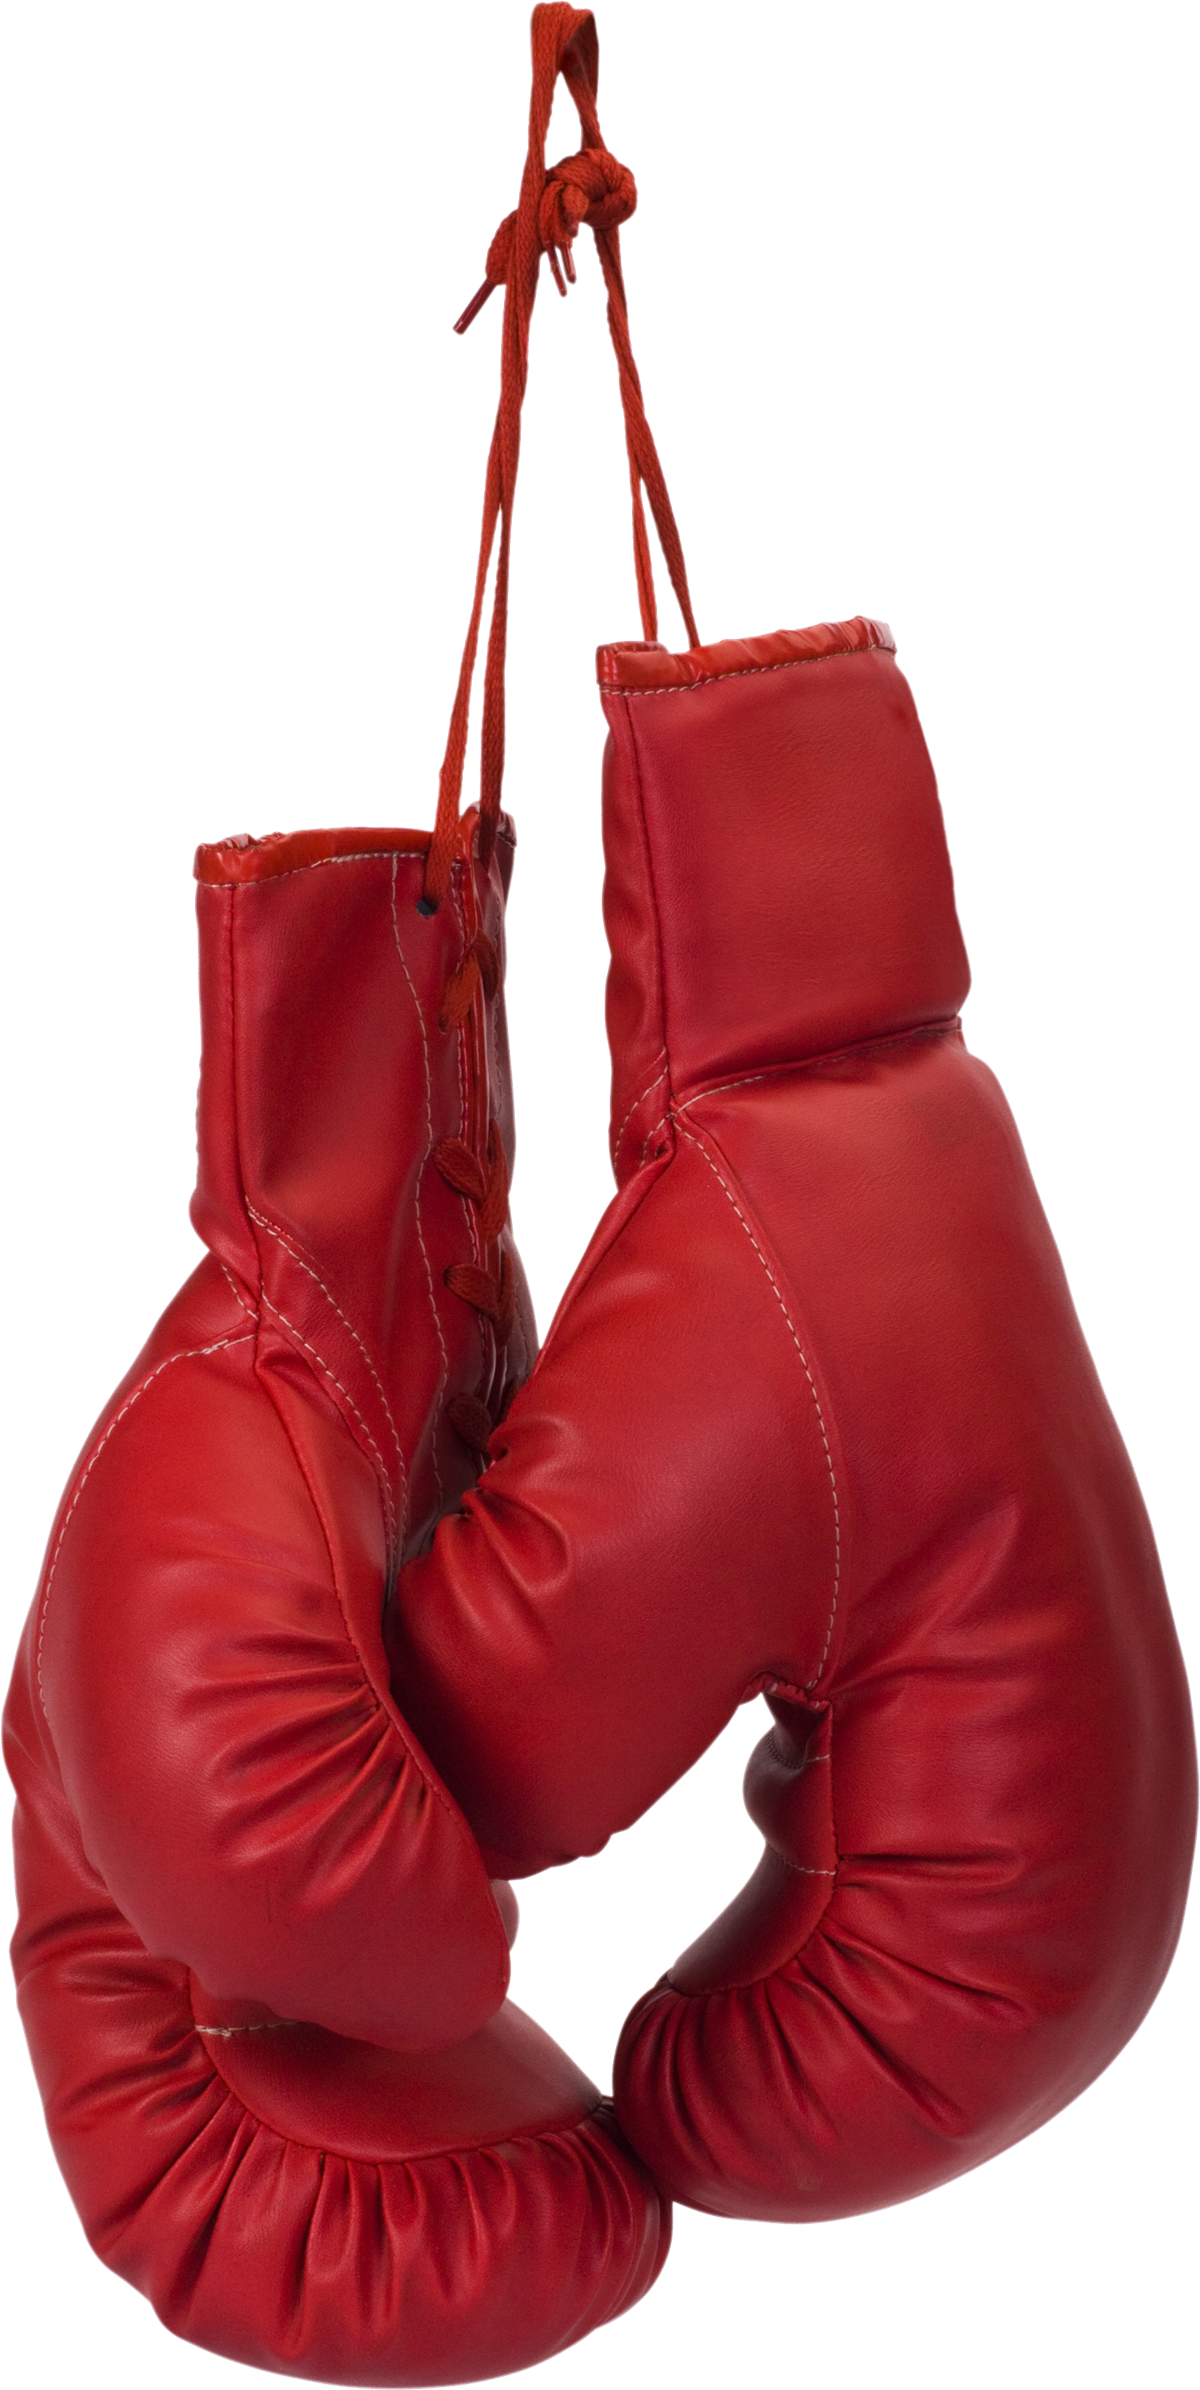 Gants de boxe rouge PNG Image de haute qualité